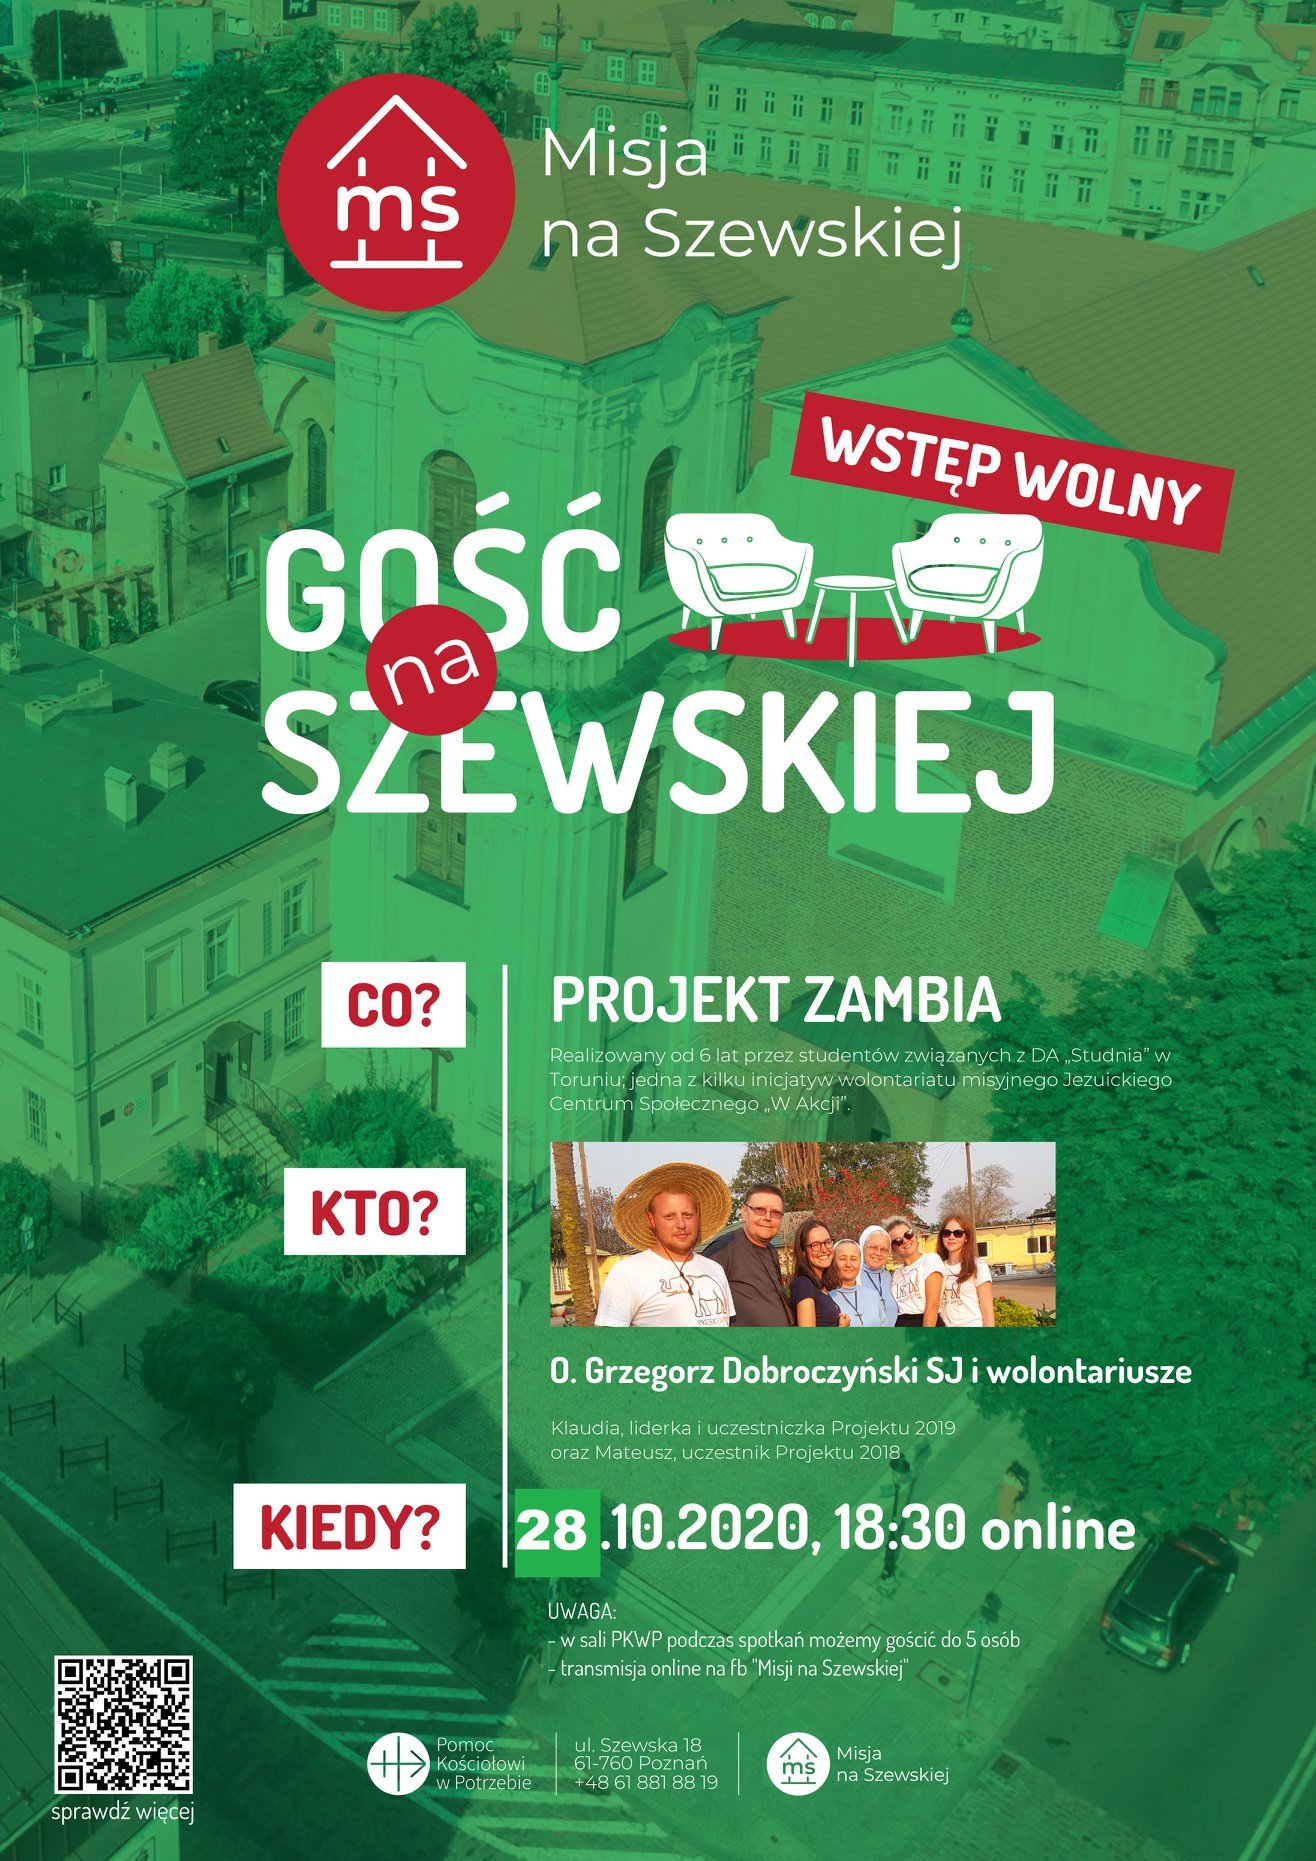 Projekt Zambia w Misji na Szewskiej - online na Facebook Live